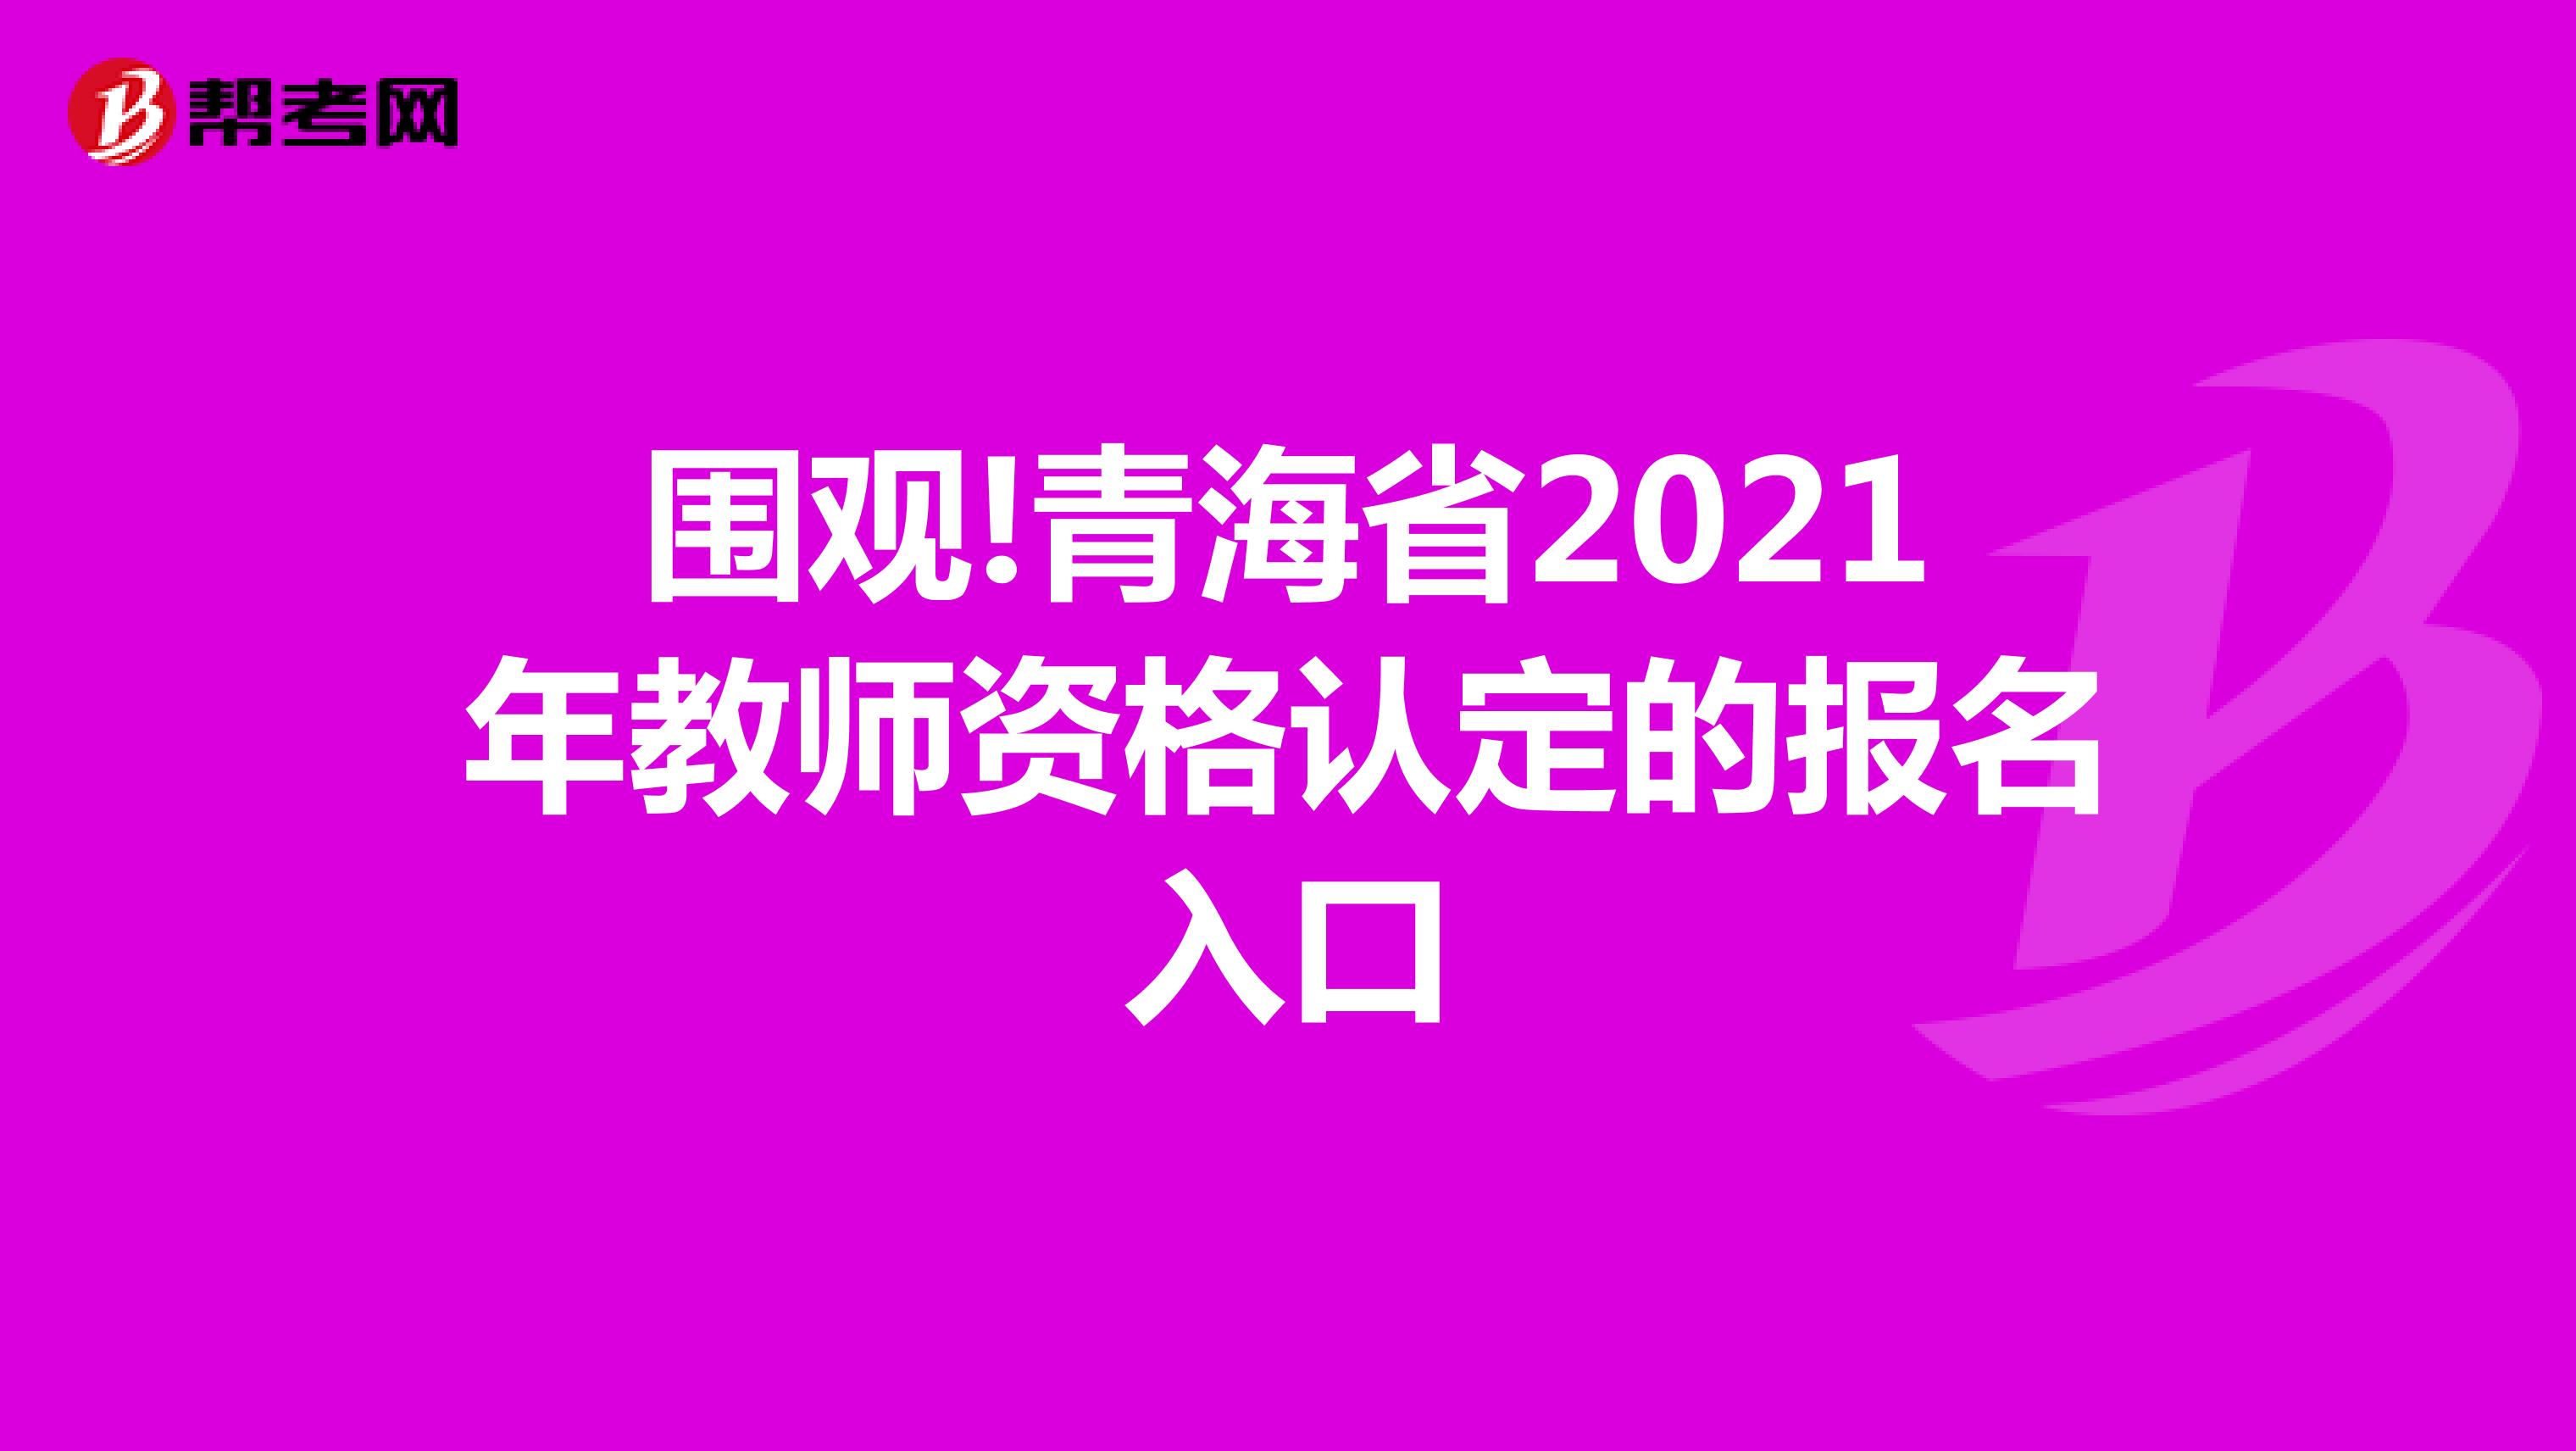 围观!青海省2021年教师资格认定的报名入口